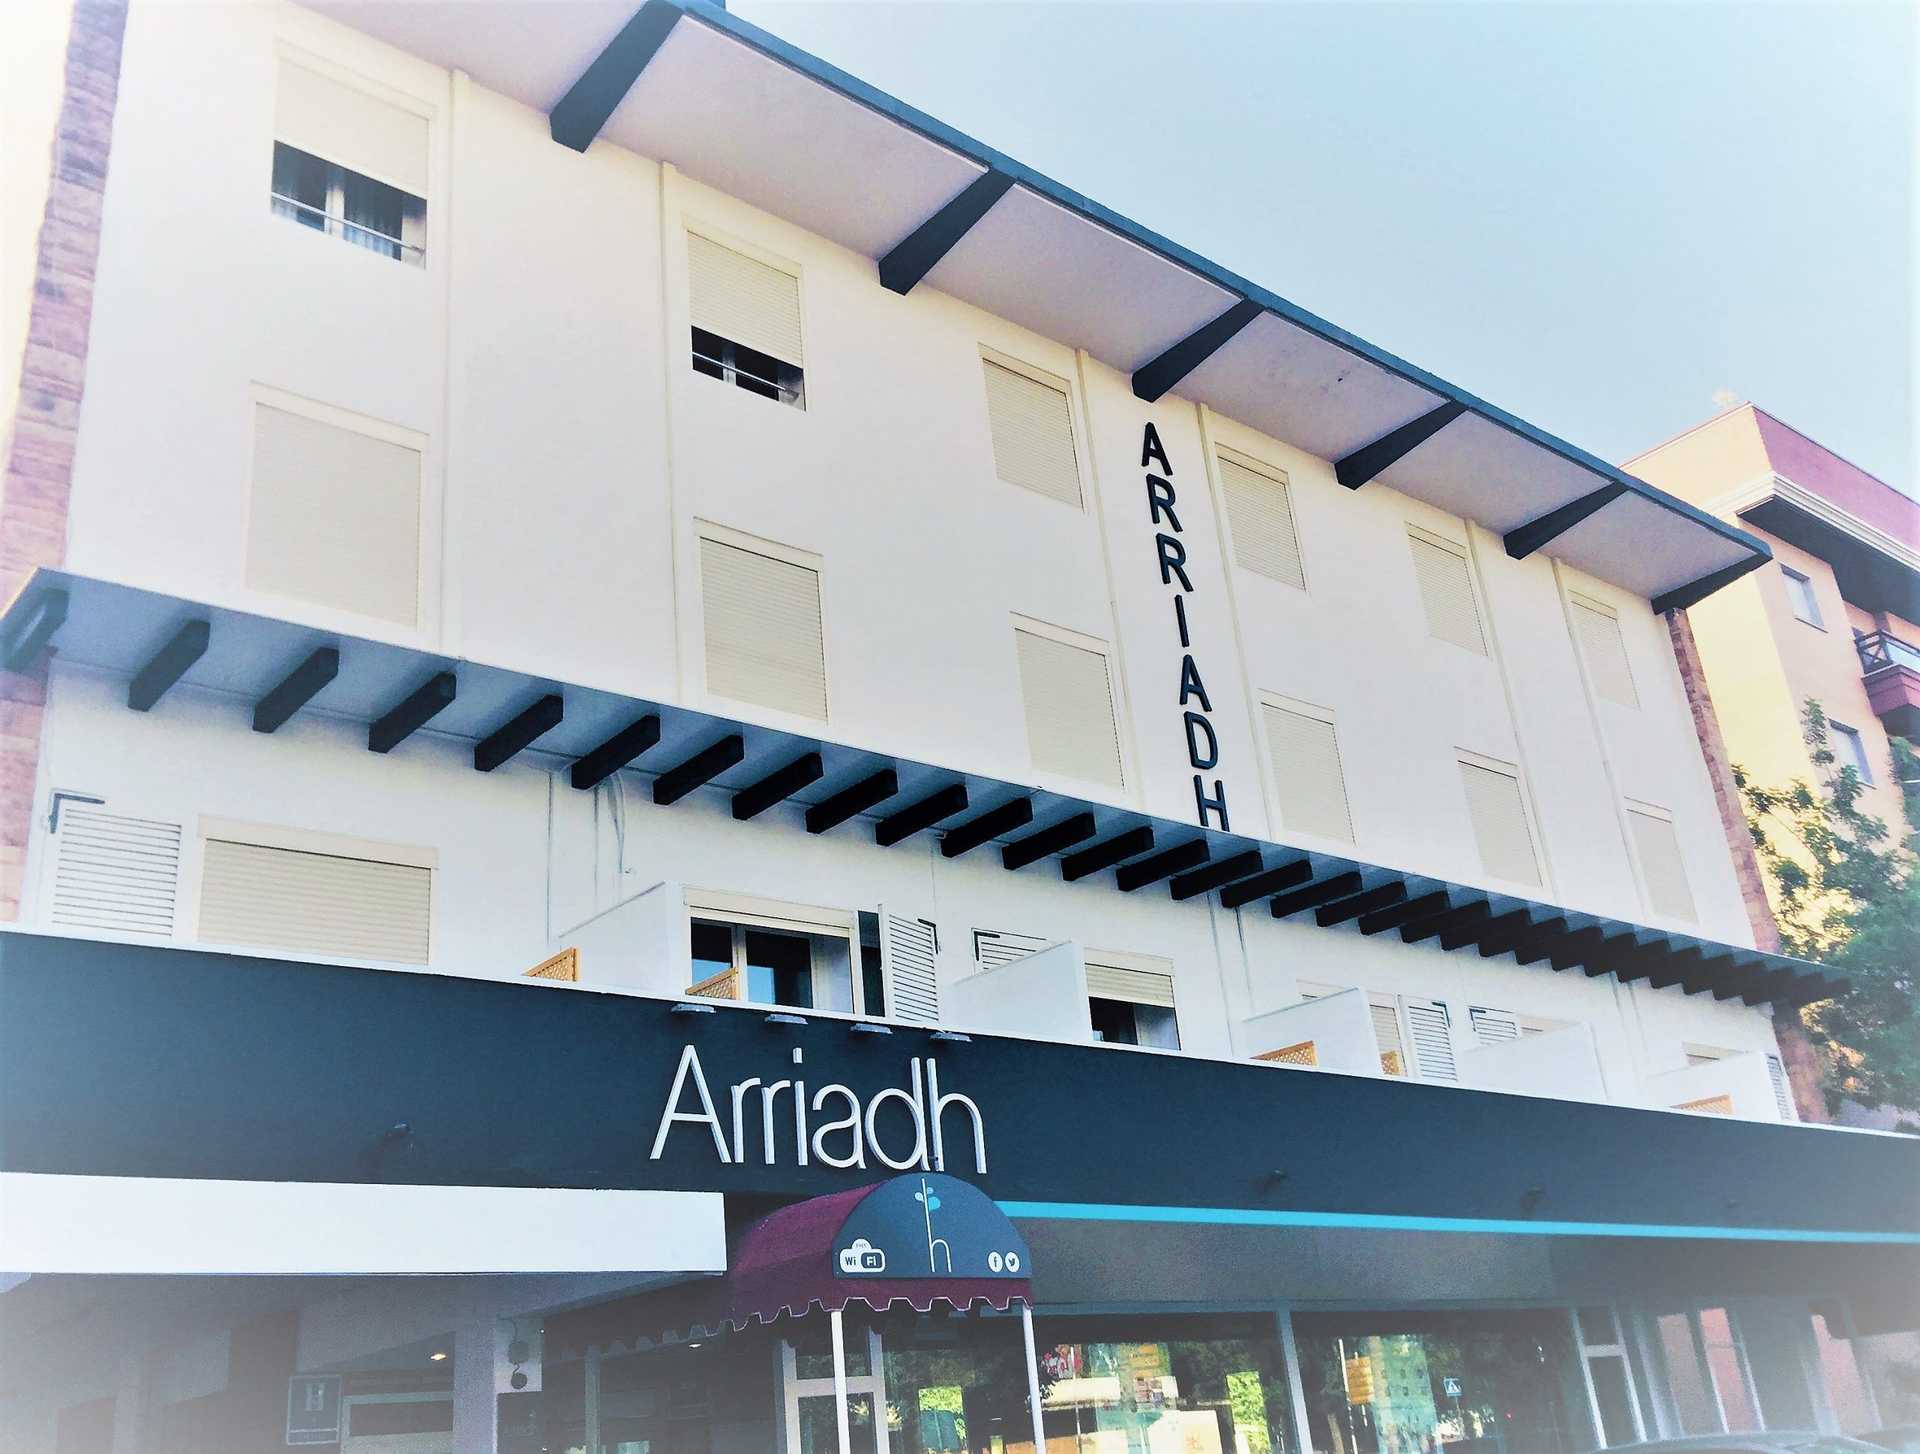 Hôtel Arriadh